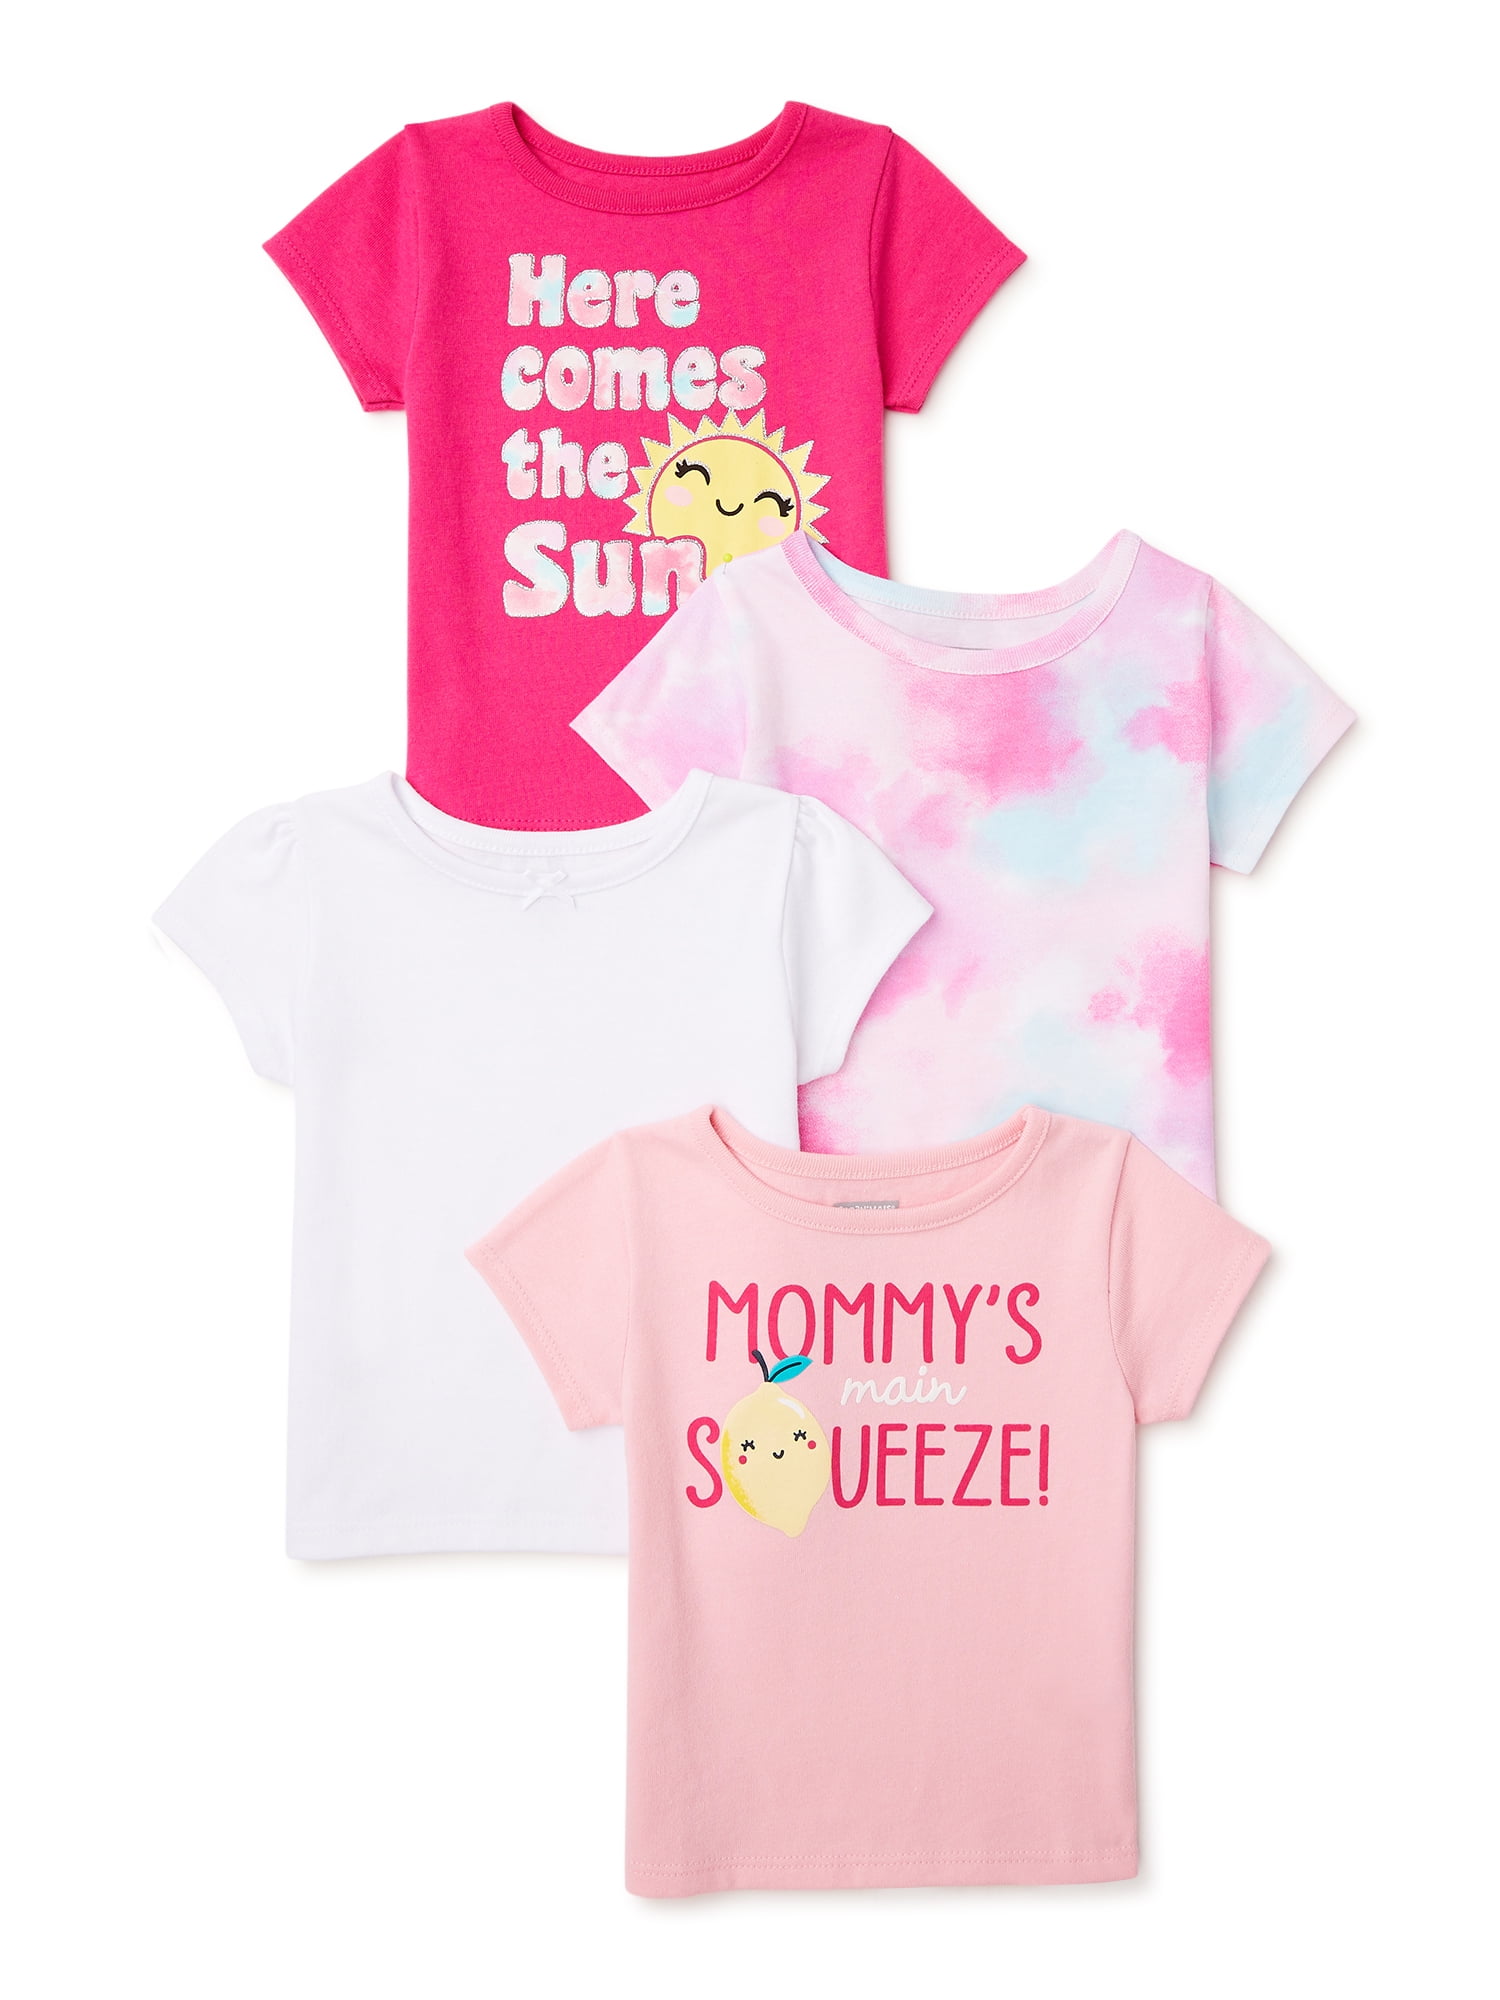 4 NEW Pink Baby GAP Girls Size 2 3 Cream White Logo Peplum Top Shirt 